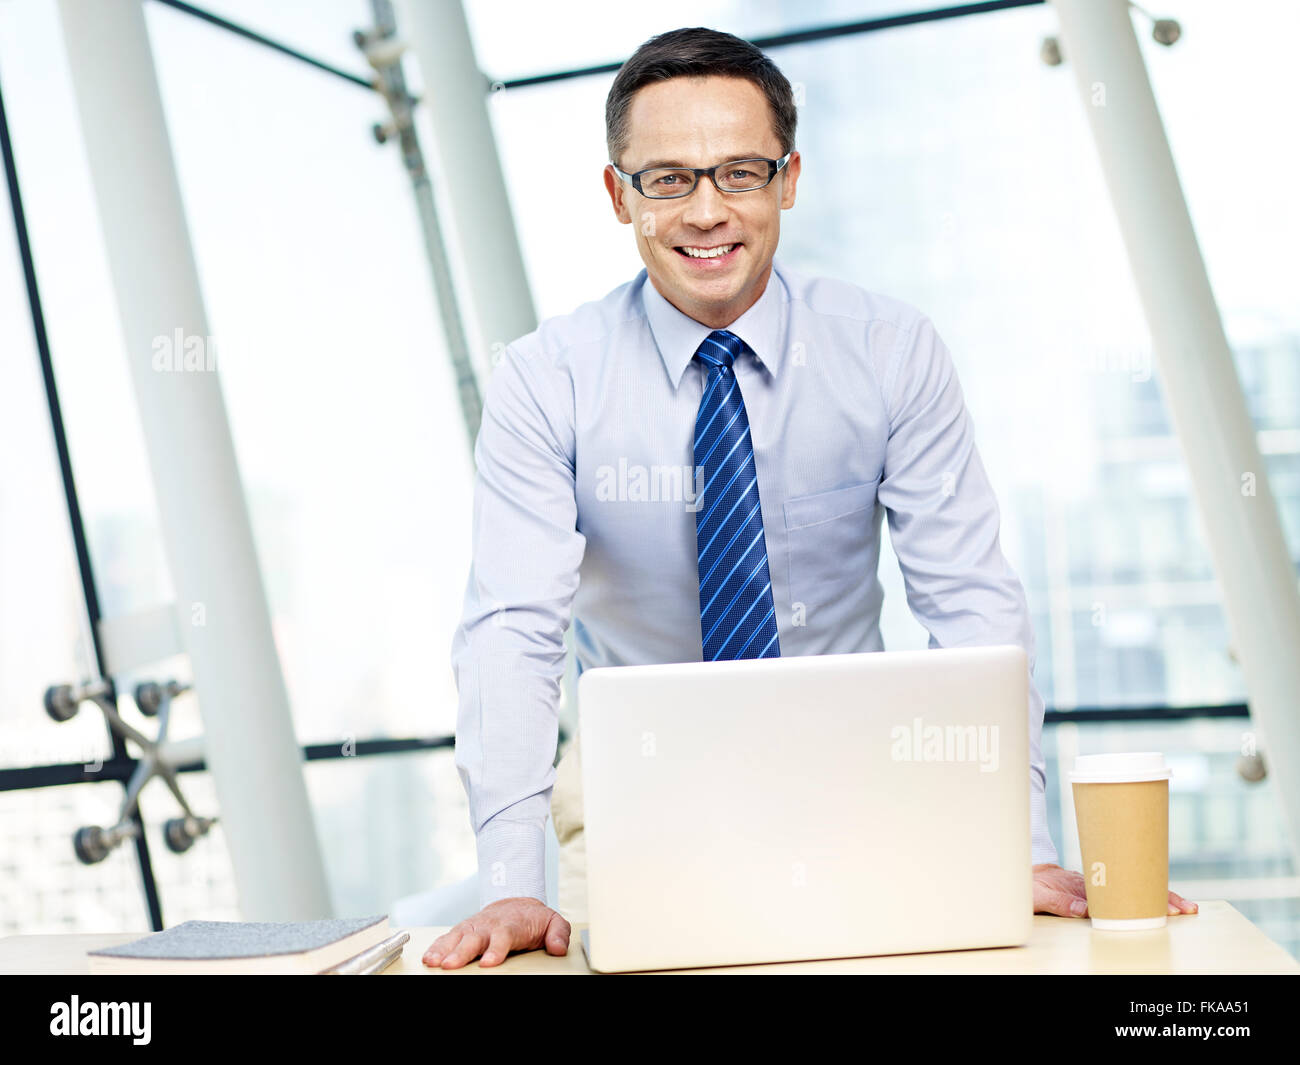 portrait of a caucasian corporate person Stock Photo